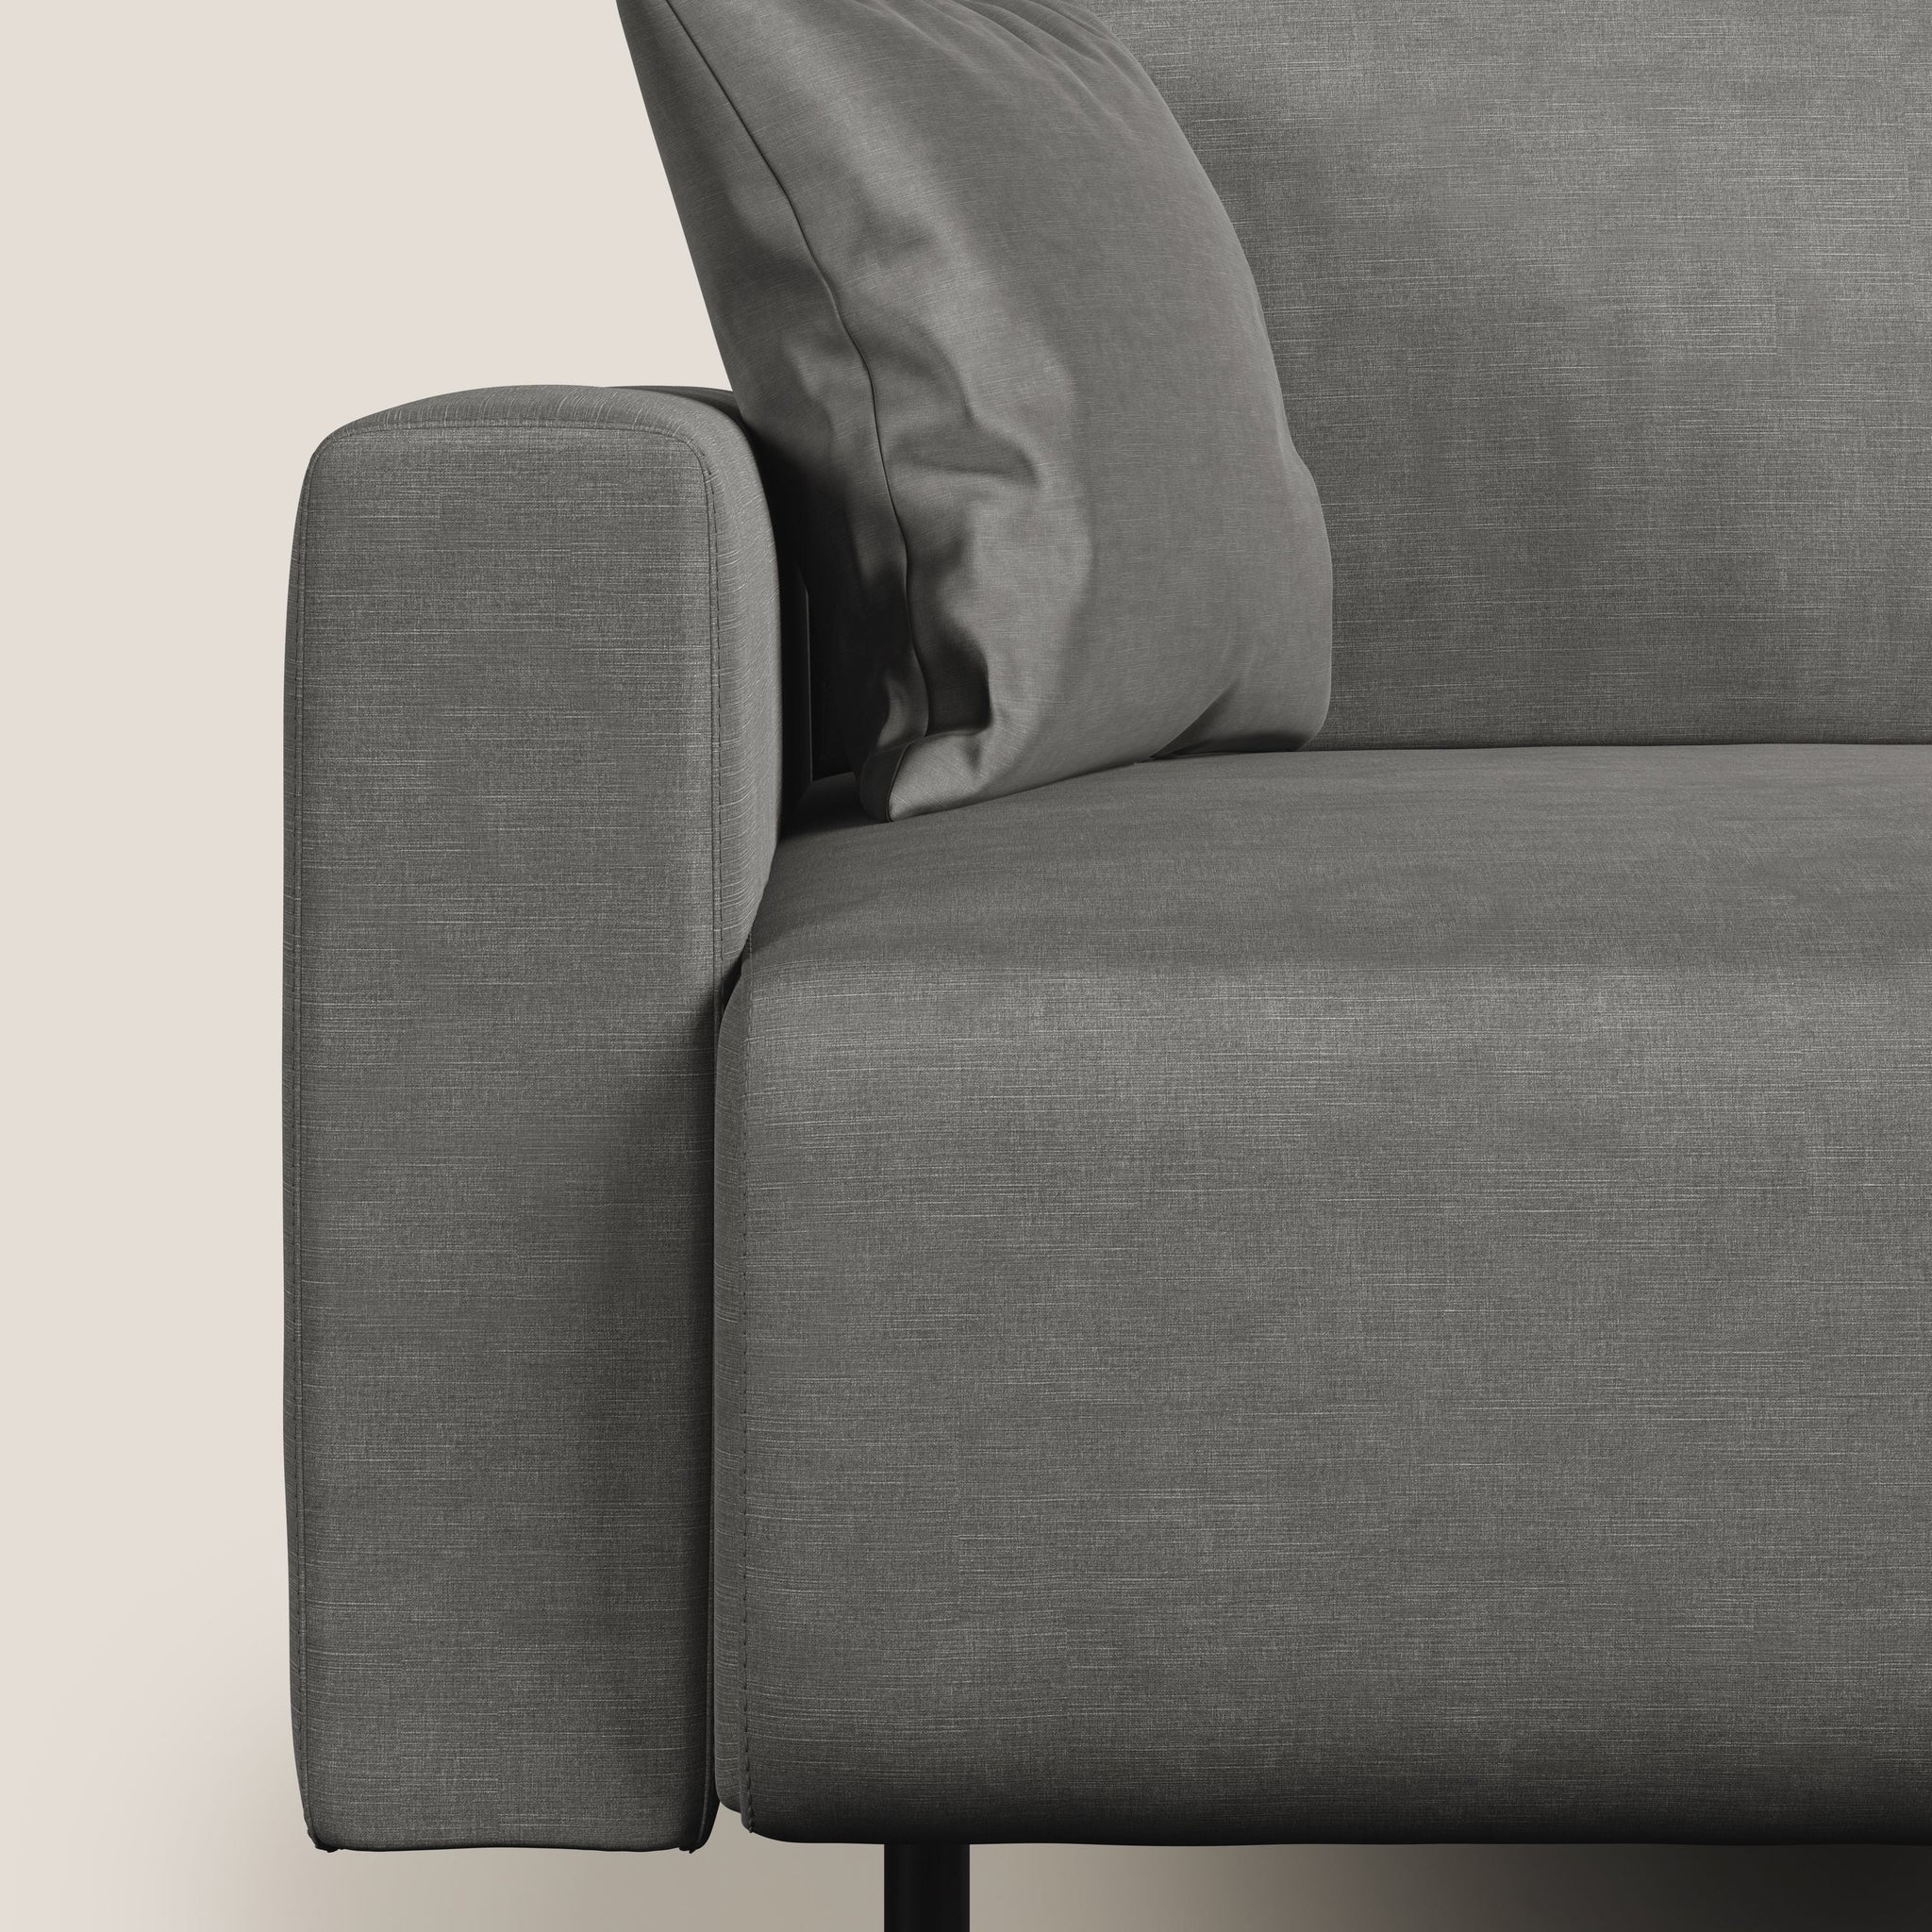 Arthur divano moderno in velluto morbido impermeabile - divano fisso, divano lineare, via_enabled - Divani.Store